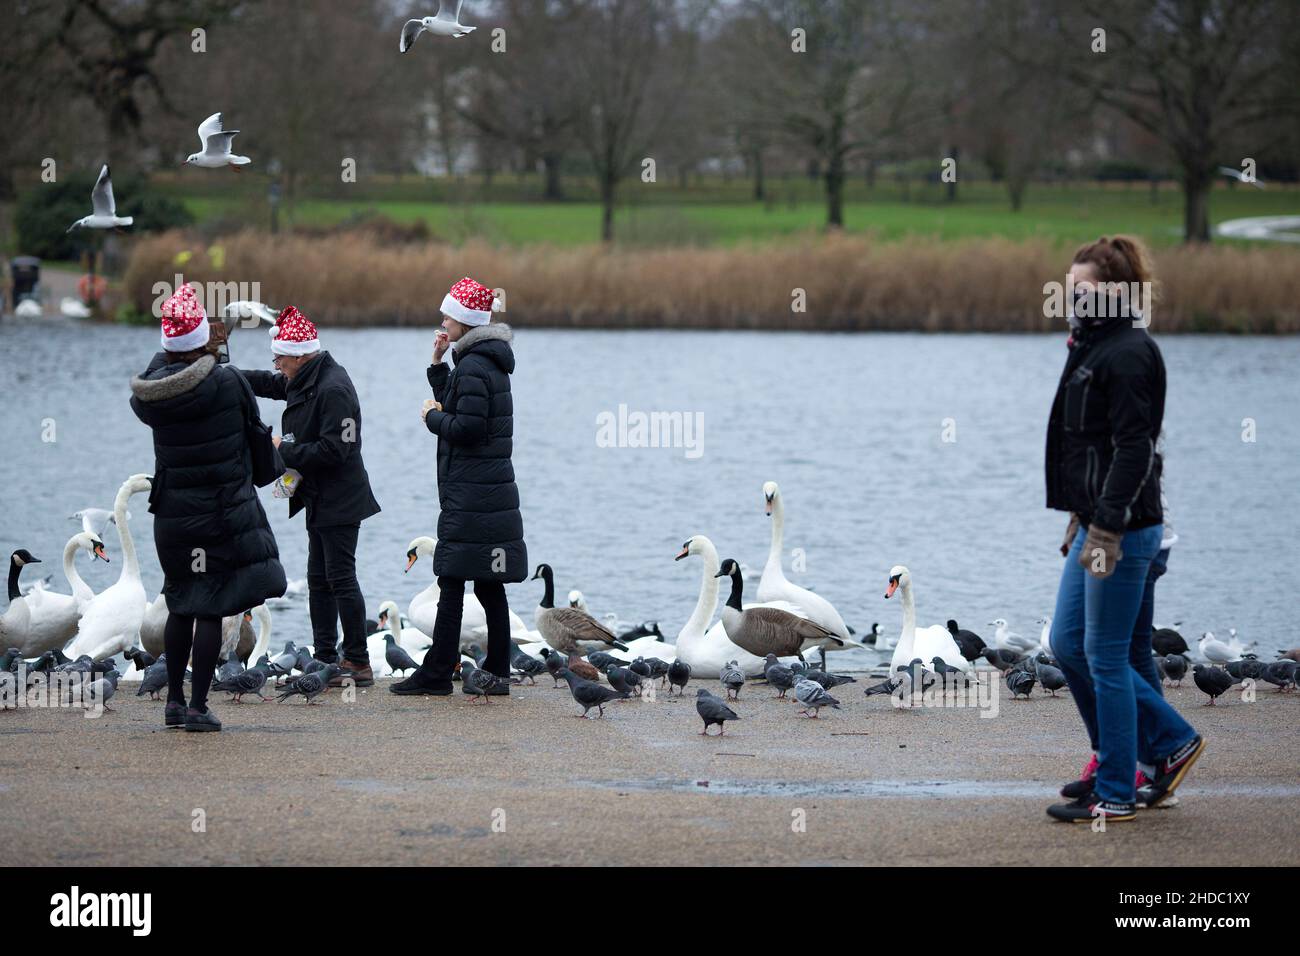 Menschen mit Weihnachtsmannmützen füttern Vögel, während Fußgänger mit Gesichtsbezügen am Weihnachtstag in London im Hyde Park an ihnen vorbeilaufen. Stockfoto